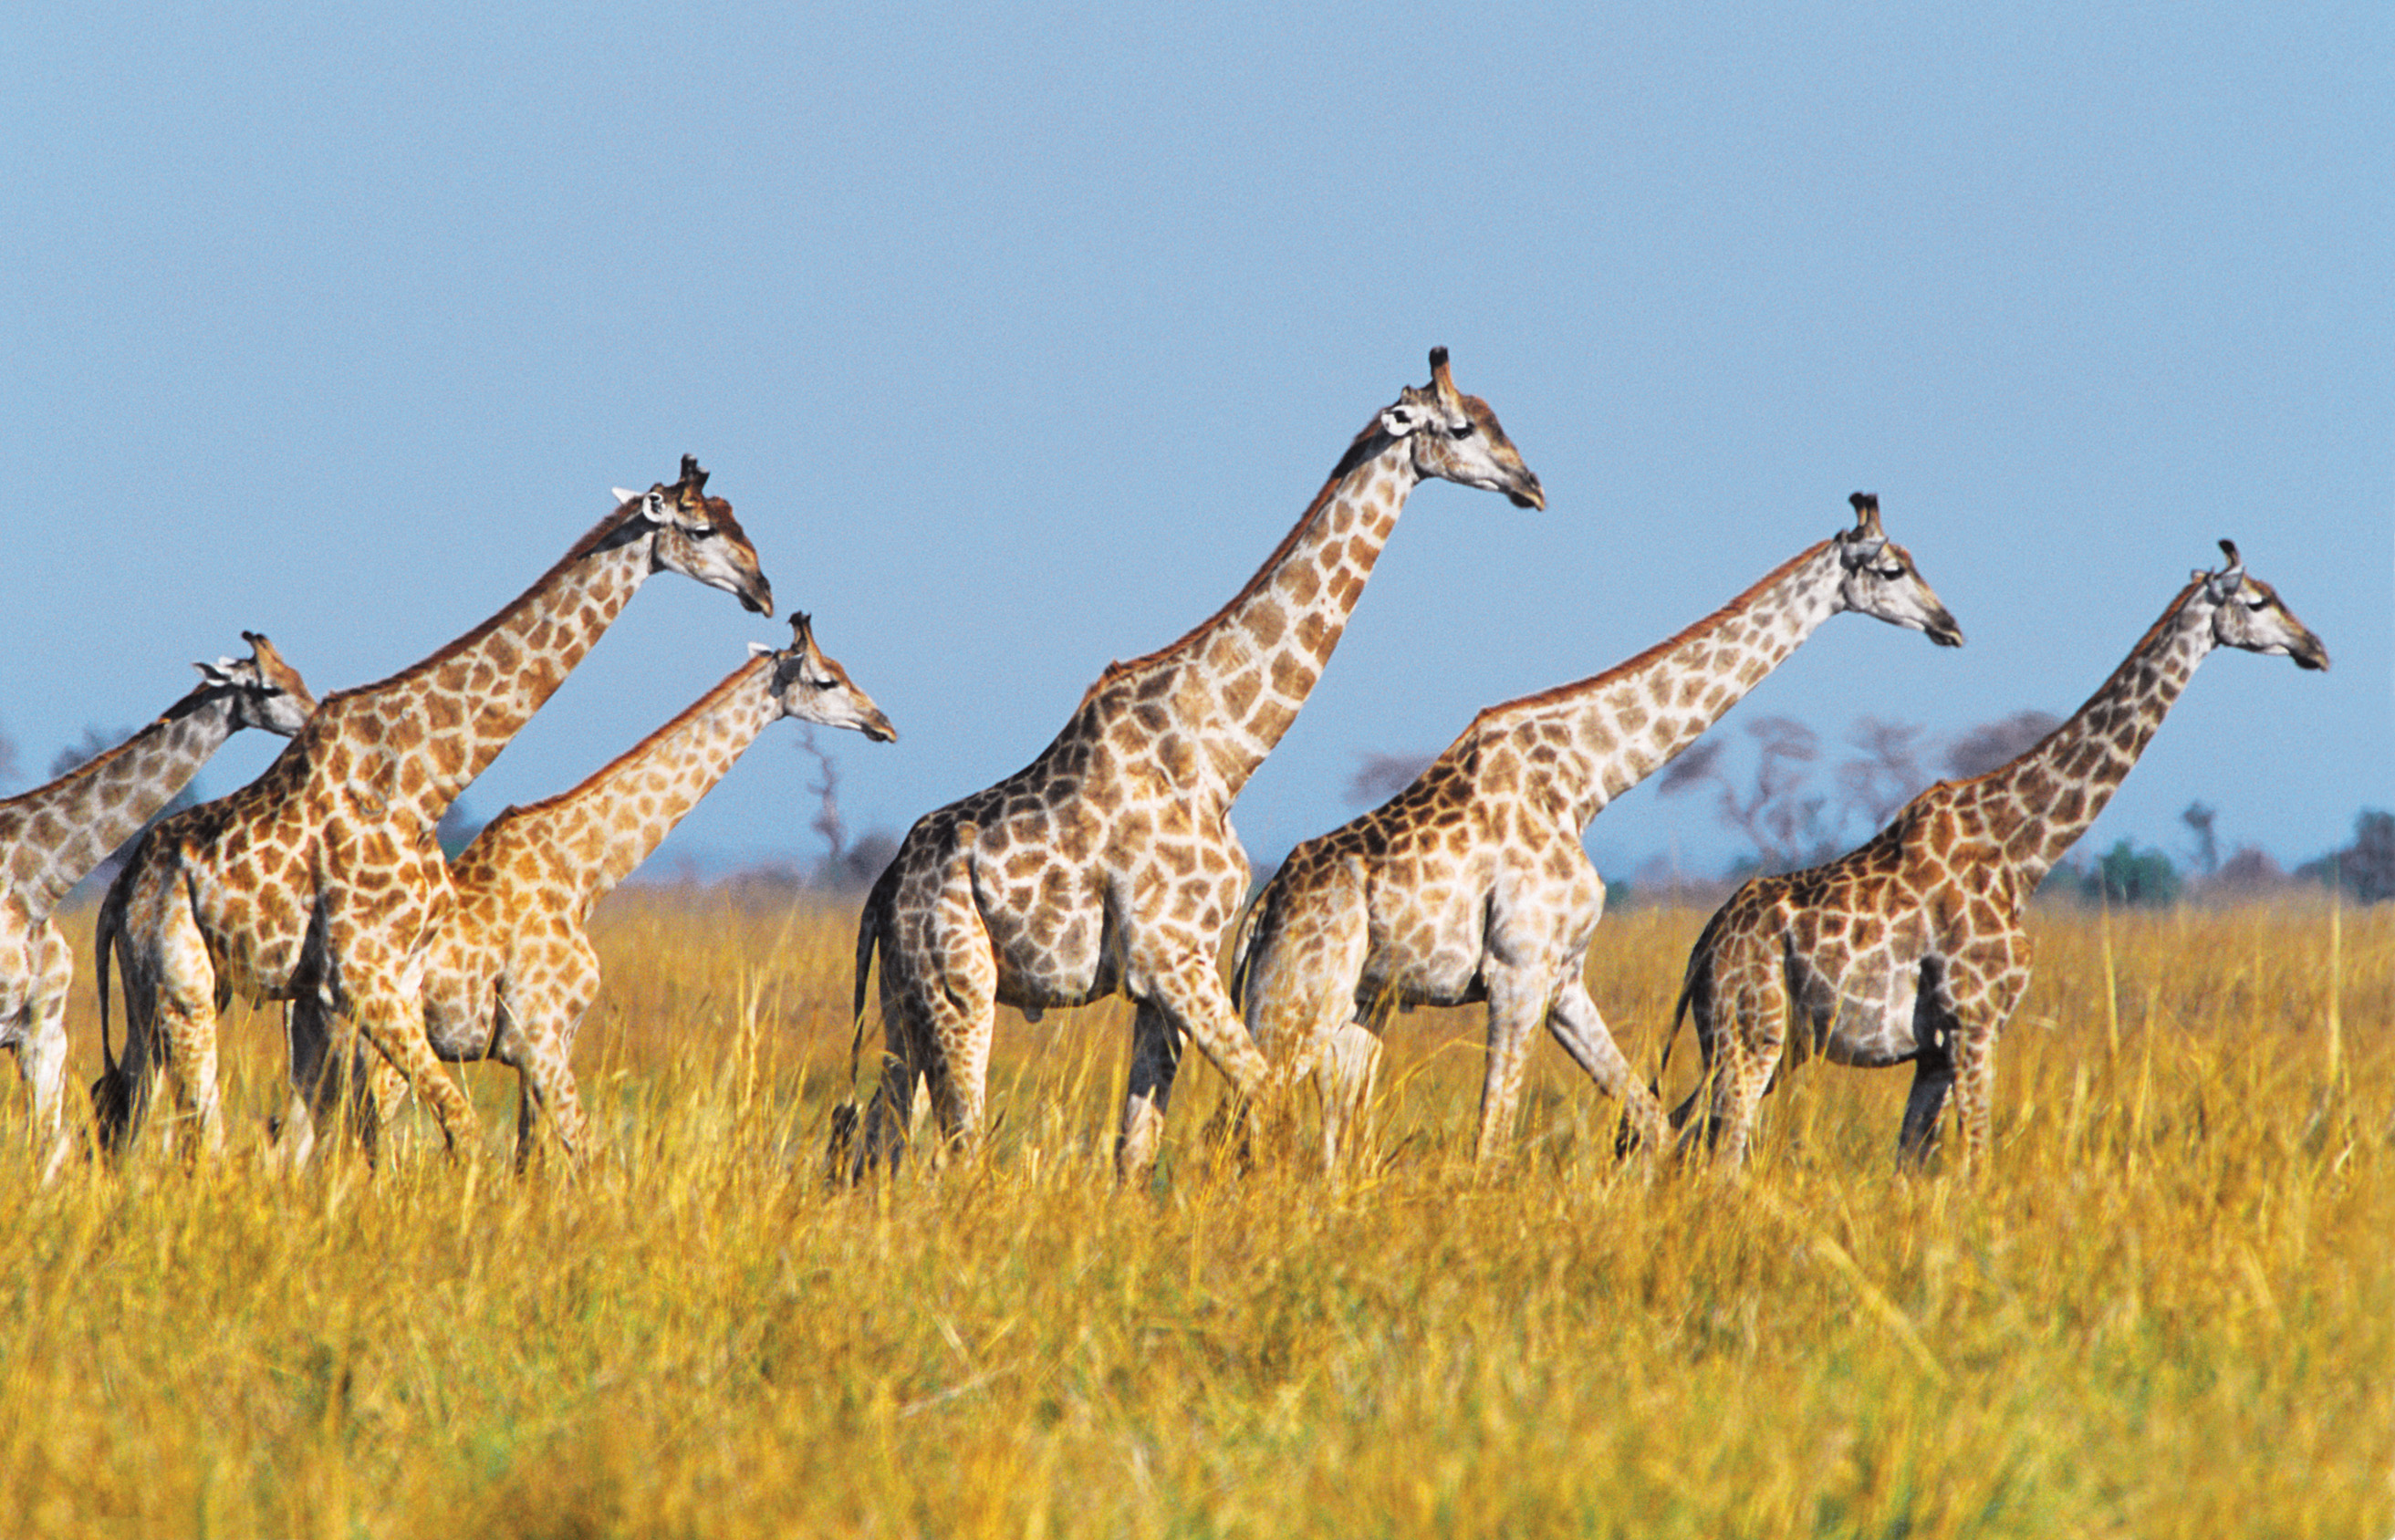 giraffes | The Wild World of Zoobooks